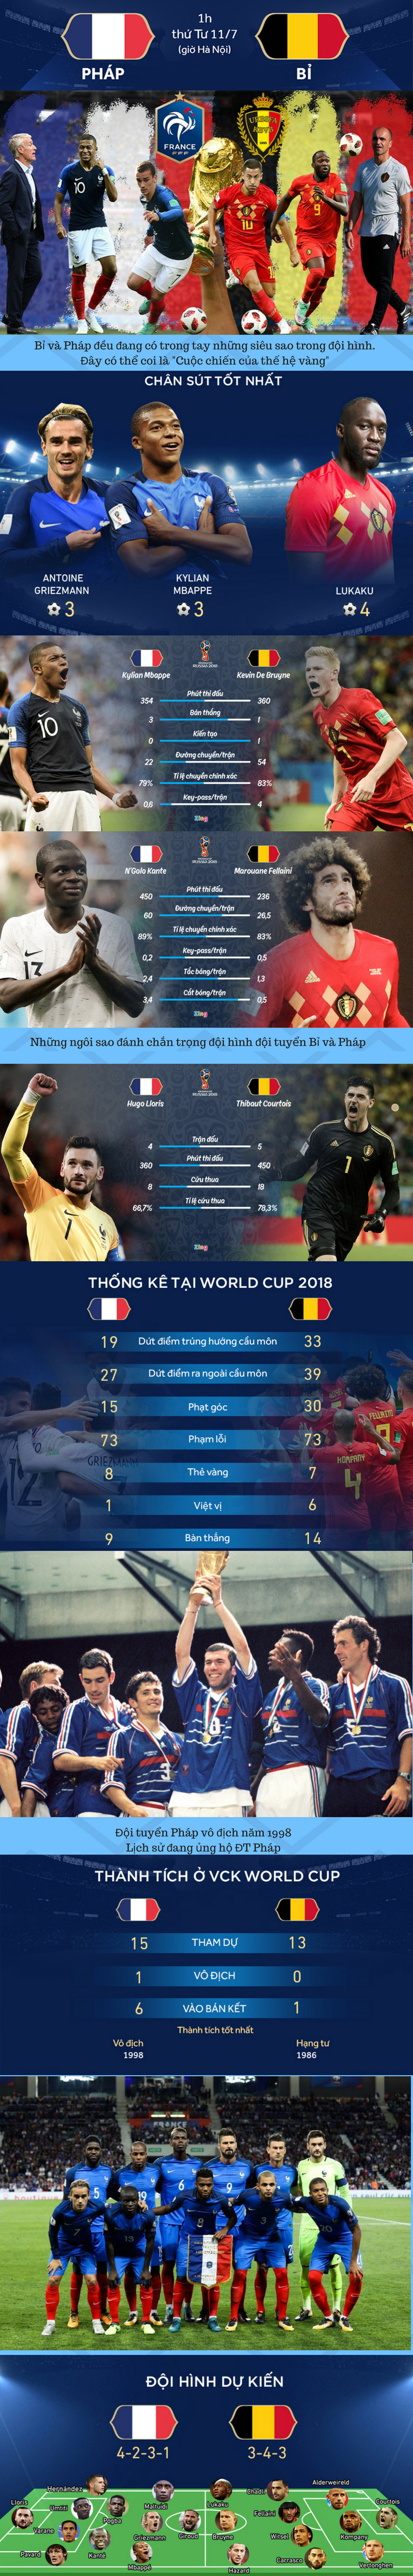 Tứ kết World Cup 2018: Pháp - Bỉ Cuộc chiến của thế hệ vàng - Ảnh 1